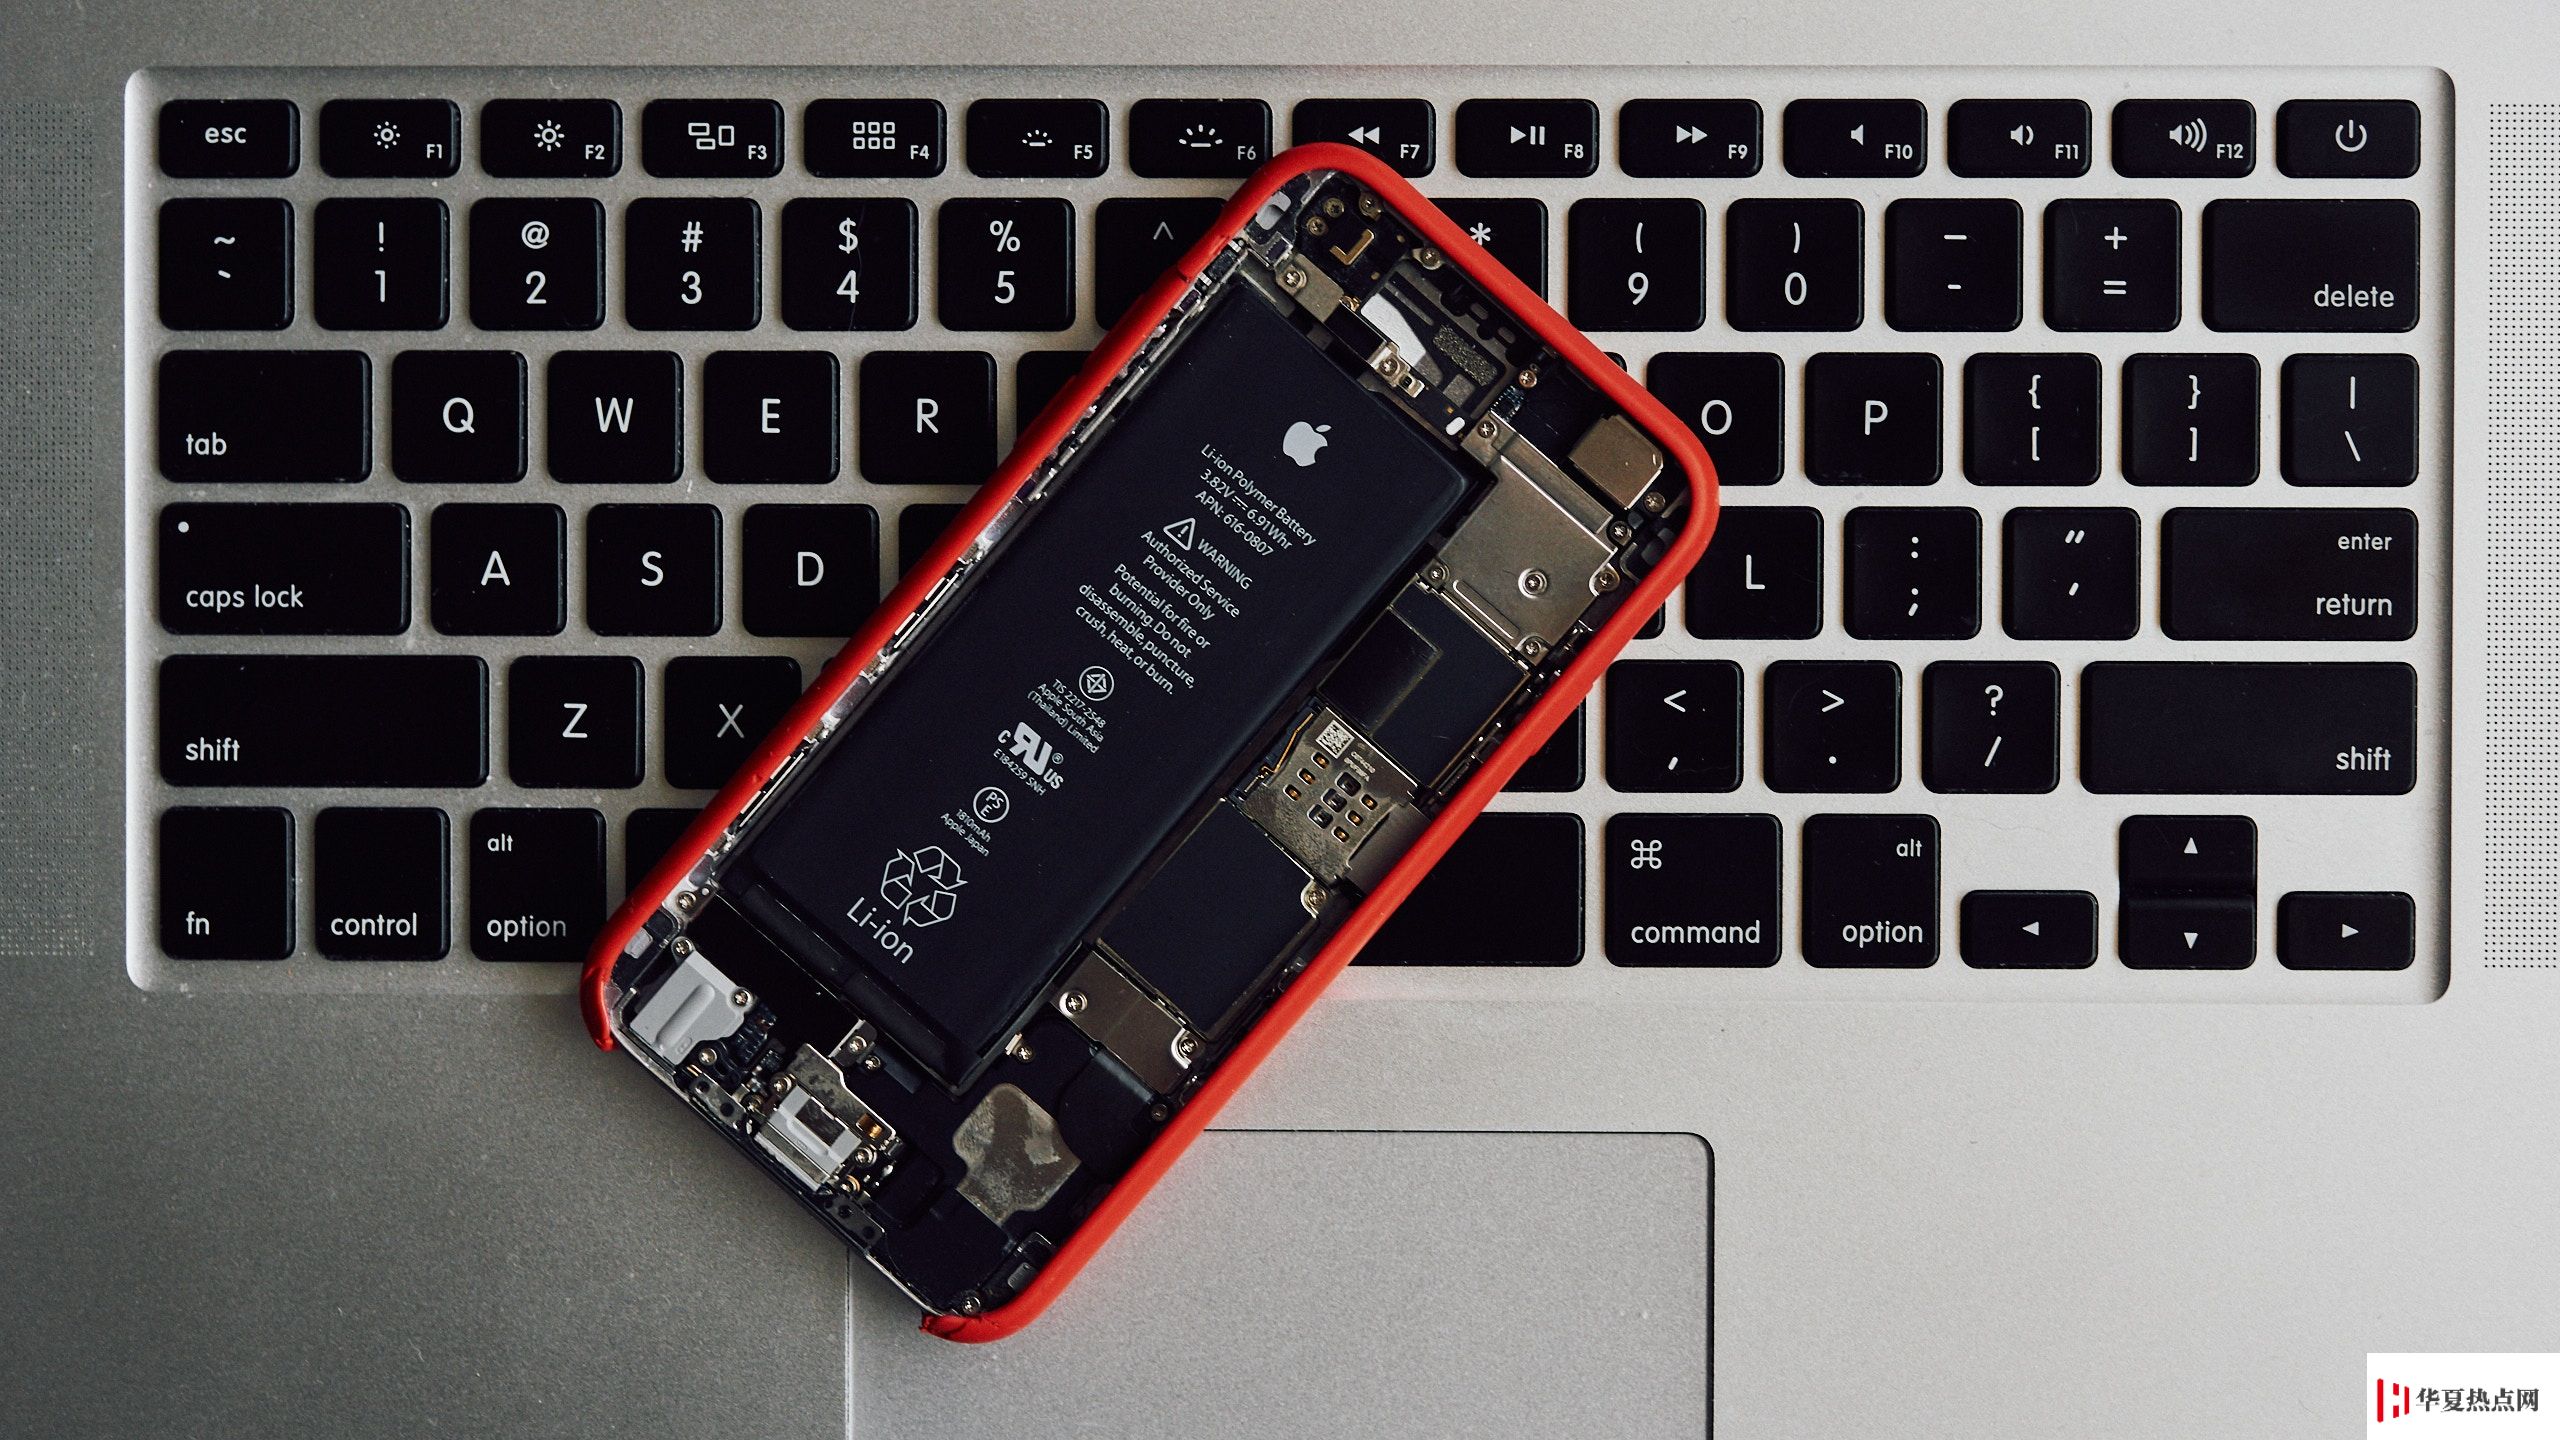 iPhone 电池没充完就拔下或者电池没用完就充电会影响电池的寿命吗？